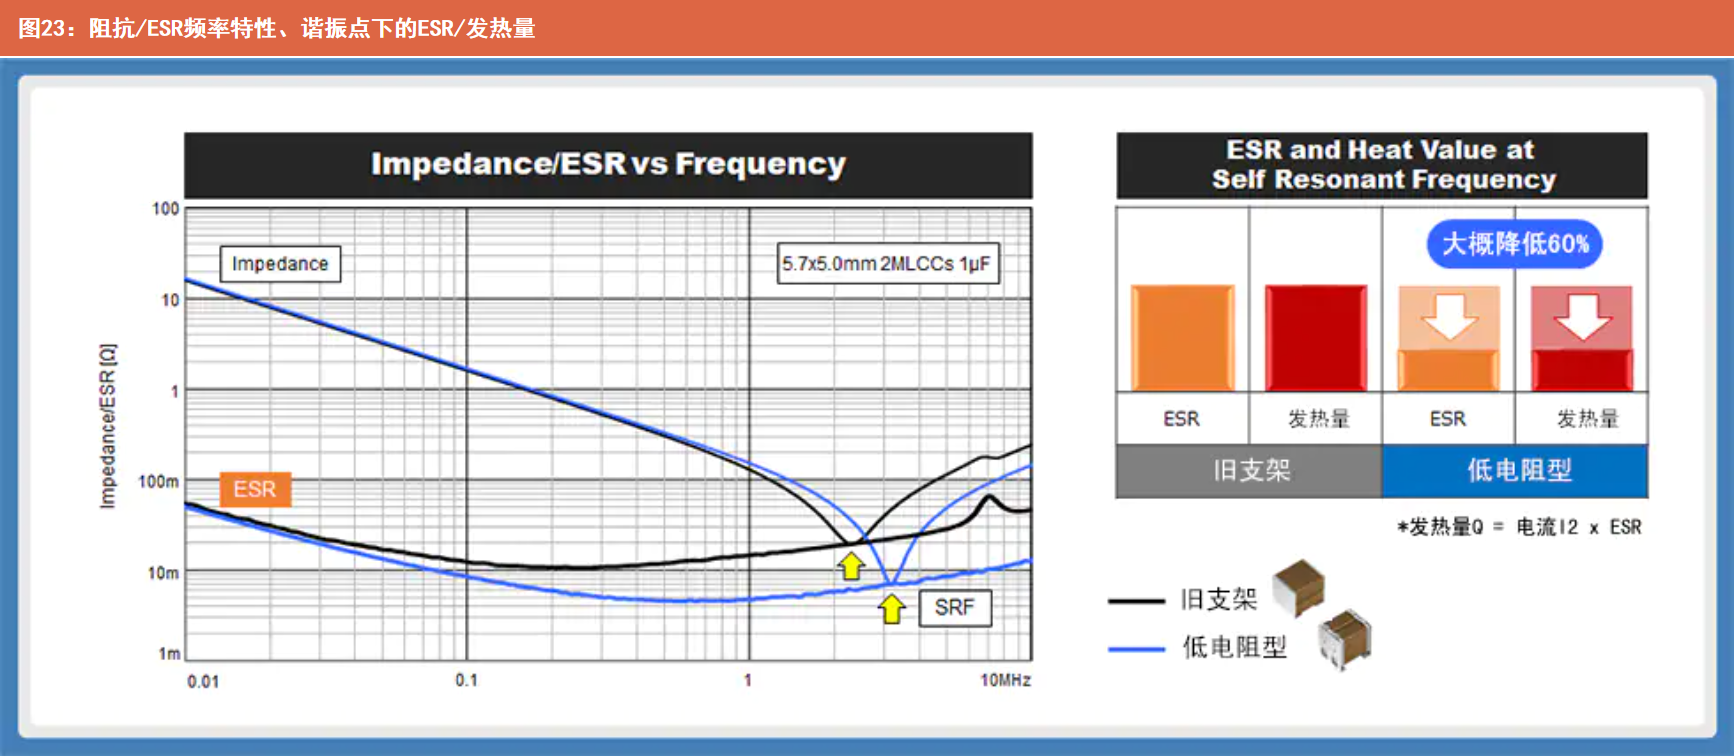 阻抗/ESR频率特性、谐振点下的ESR/发热量